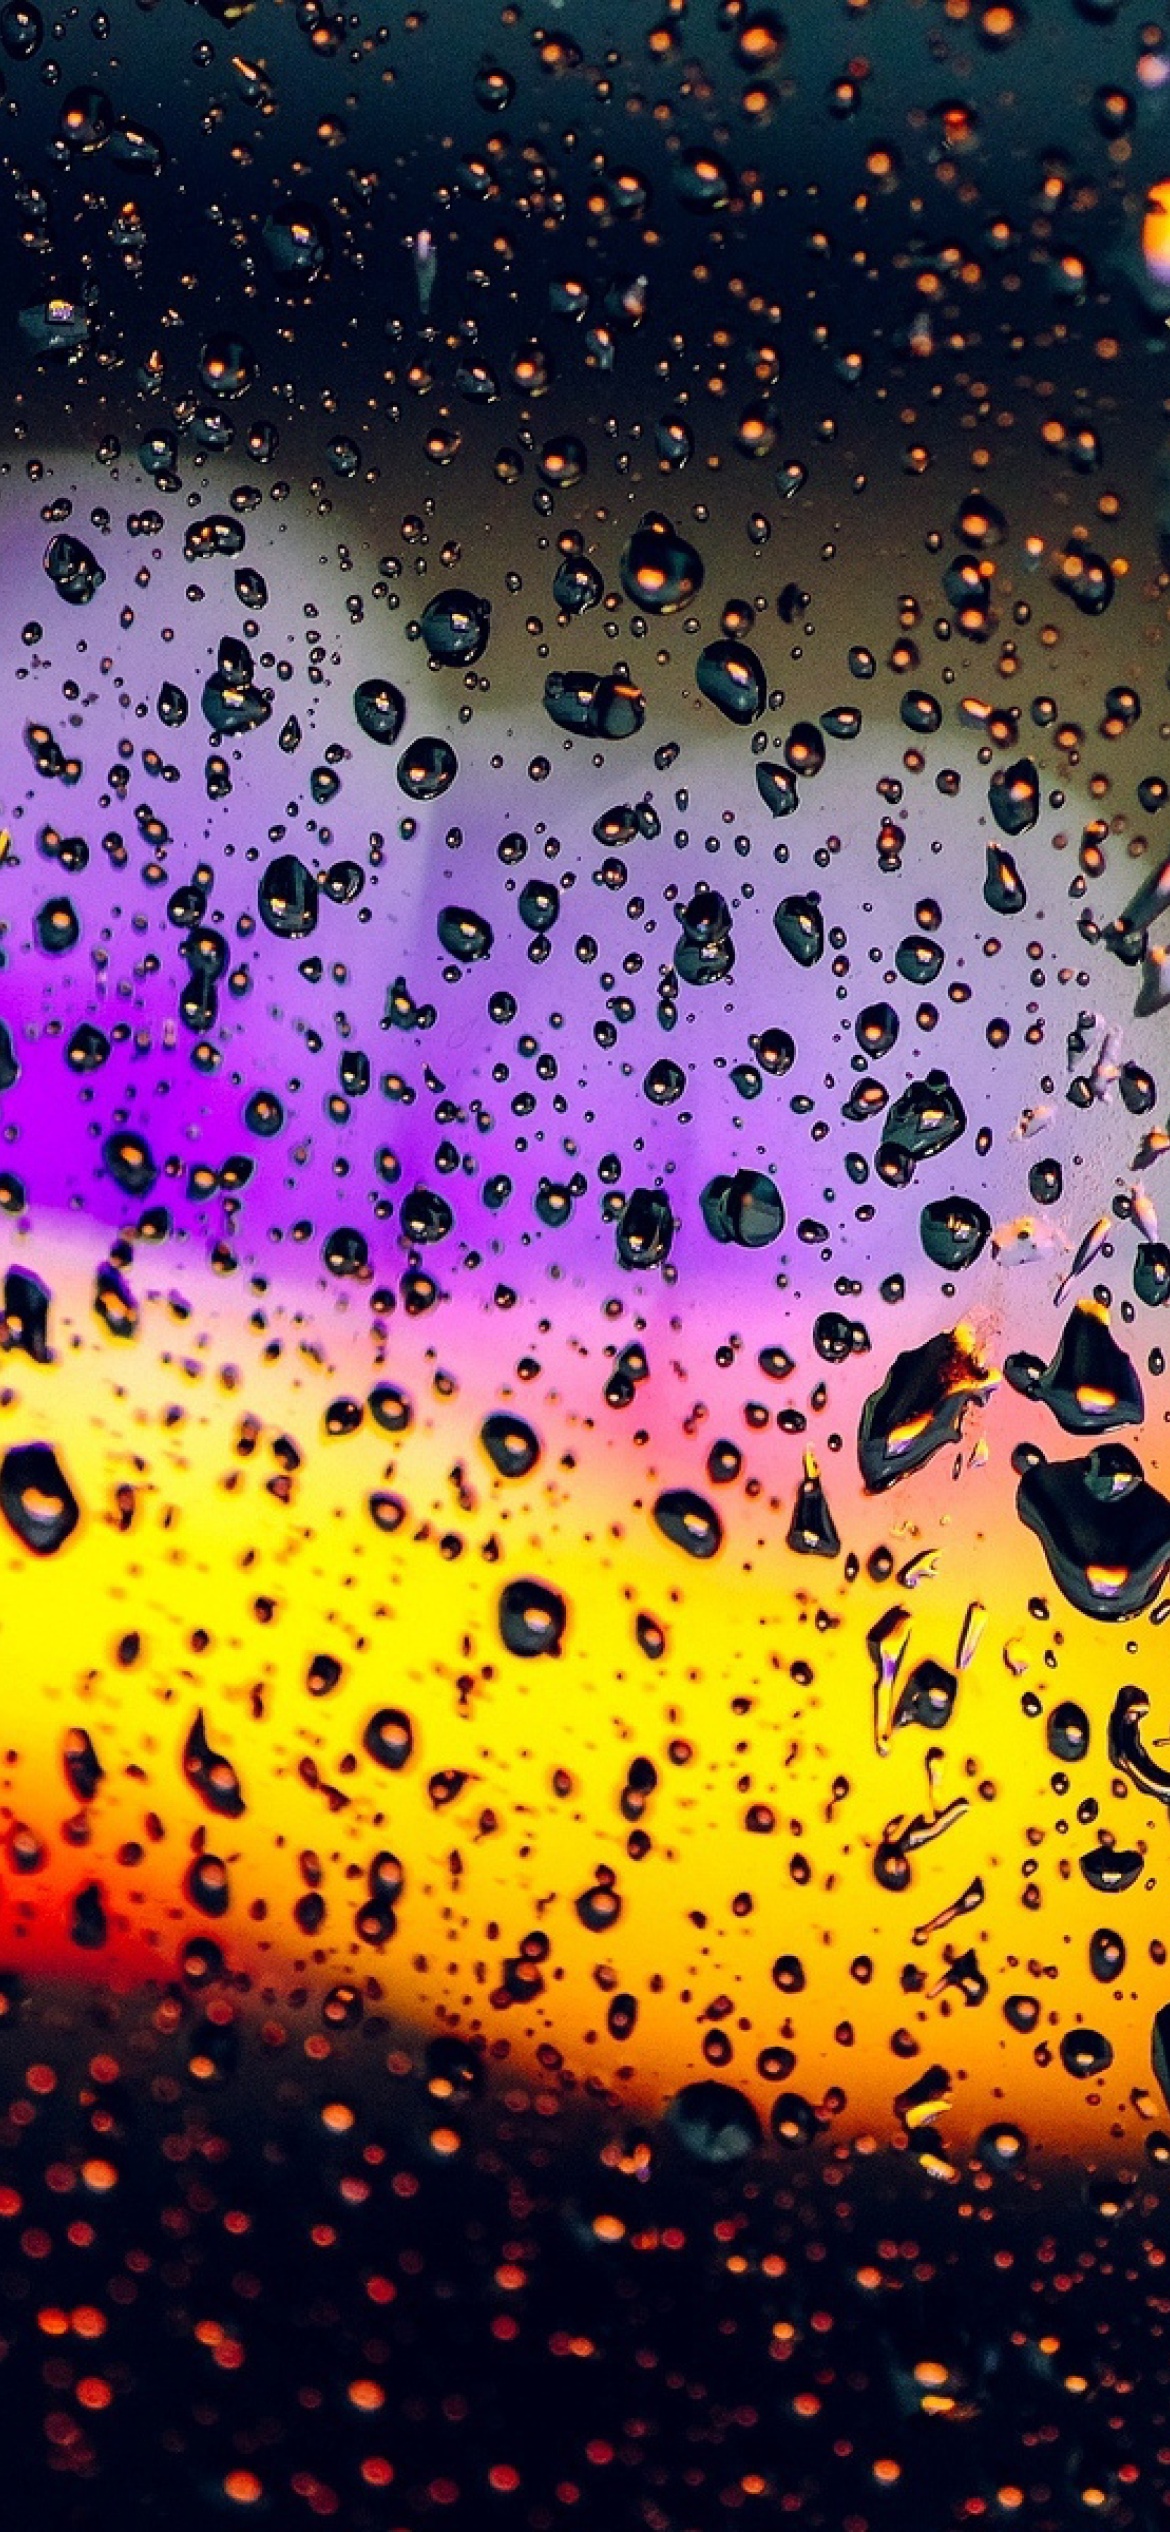 Blurred Drops on Glass wallpaper 1170x2532